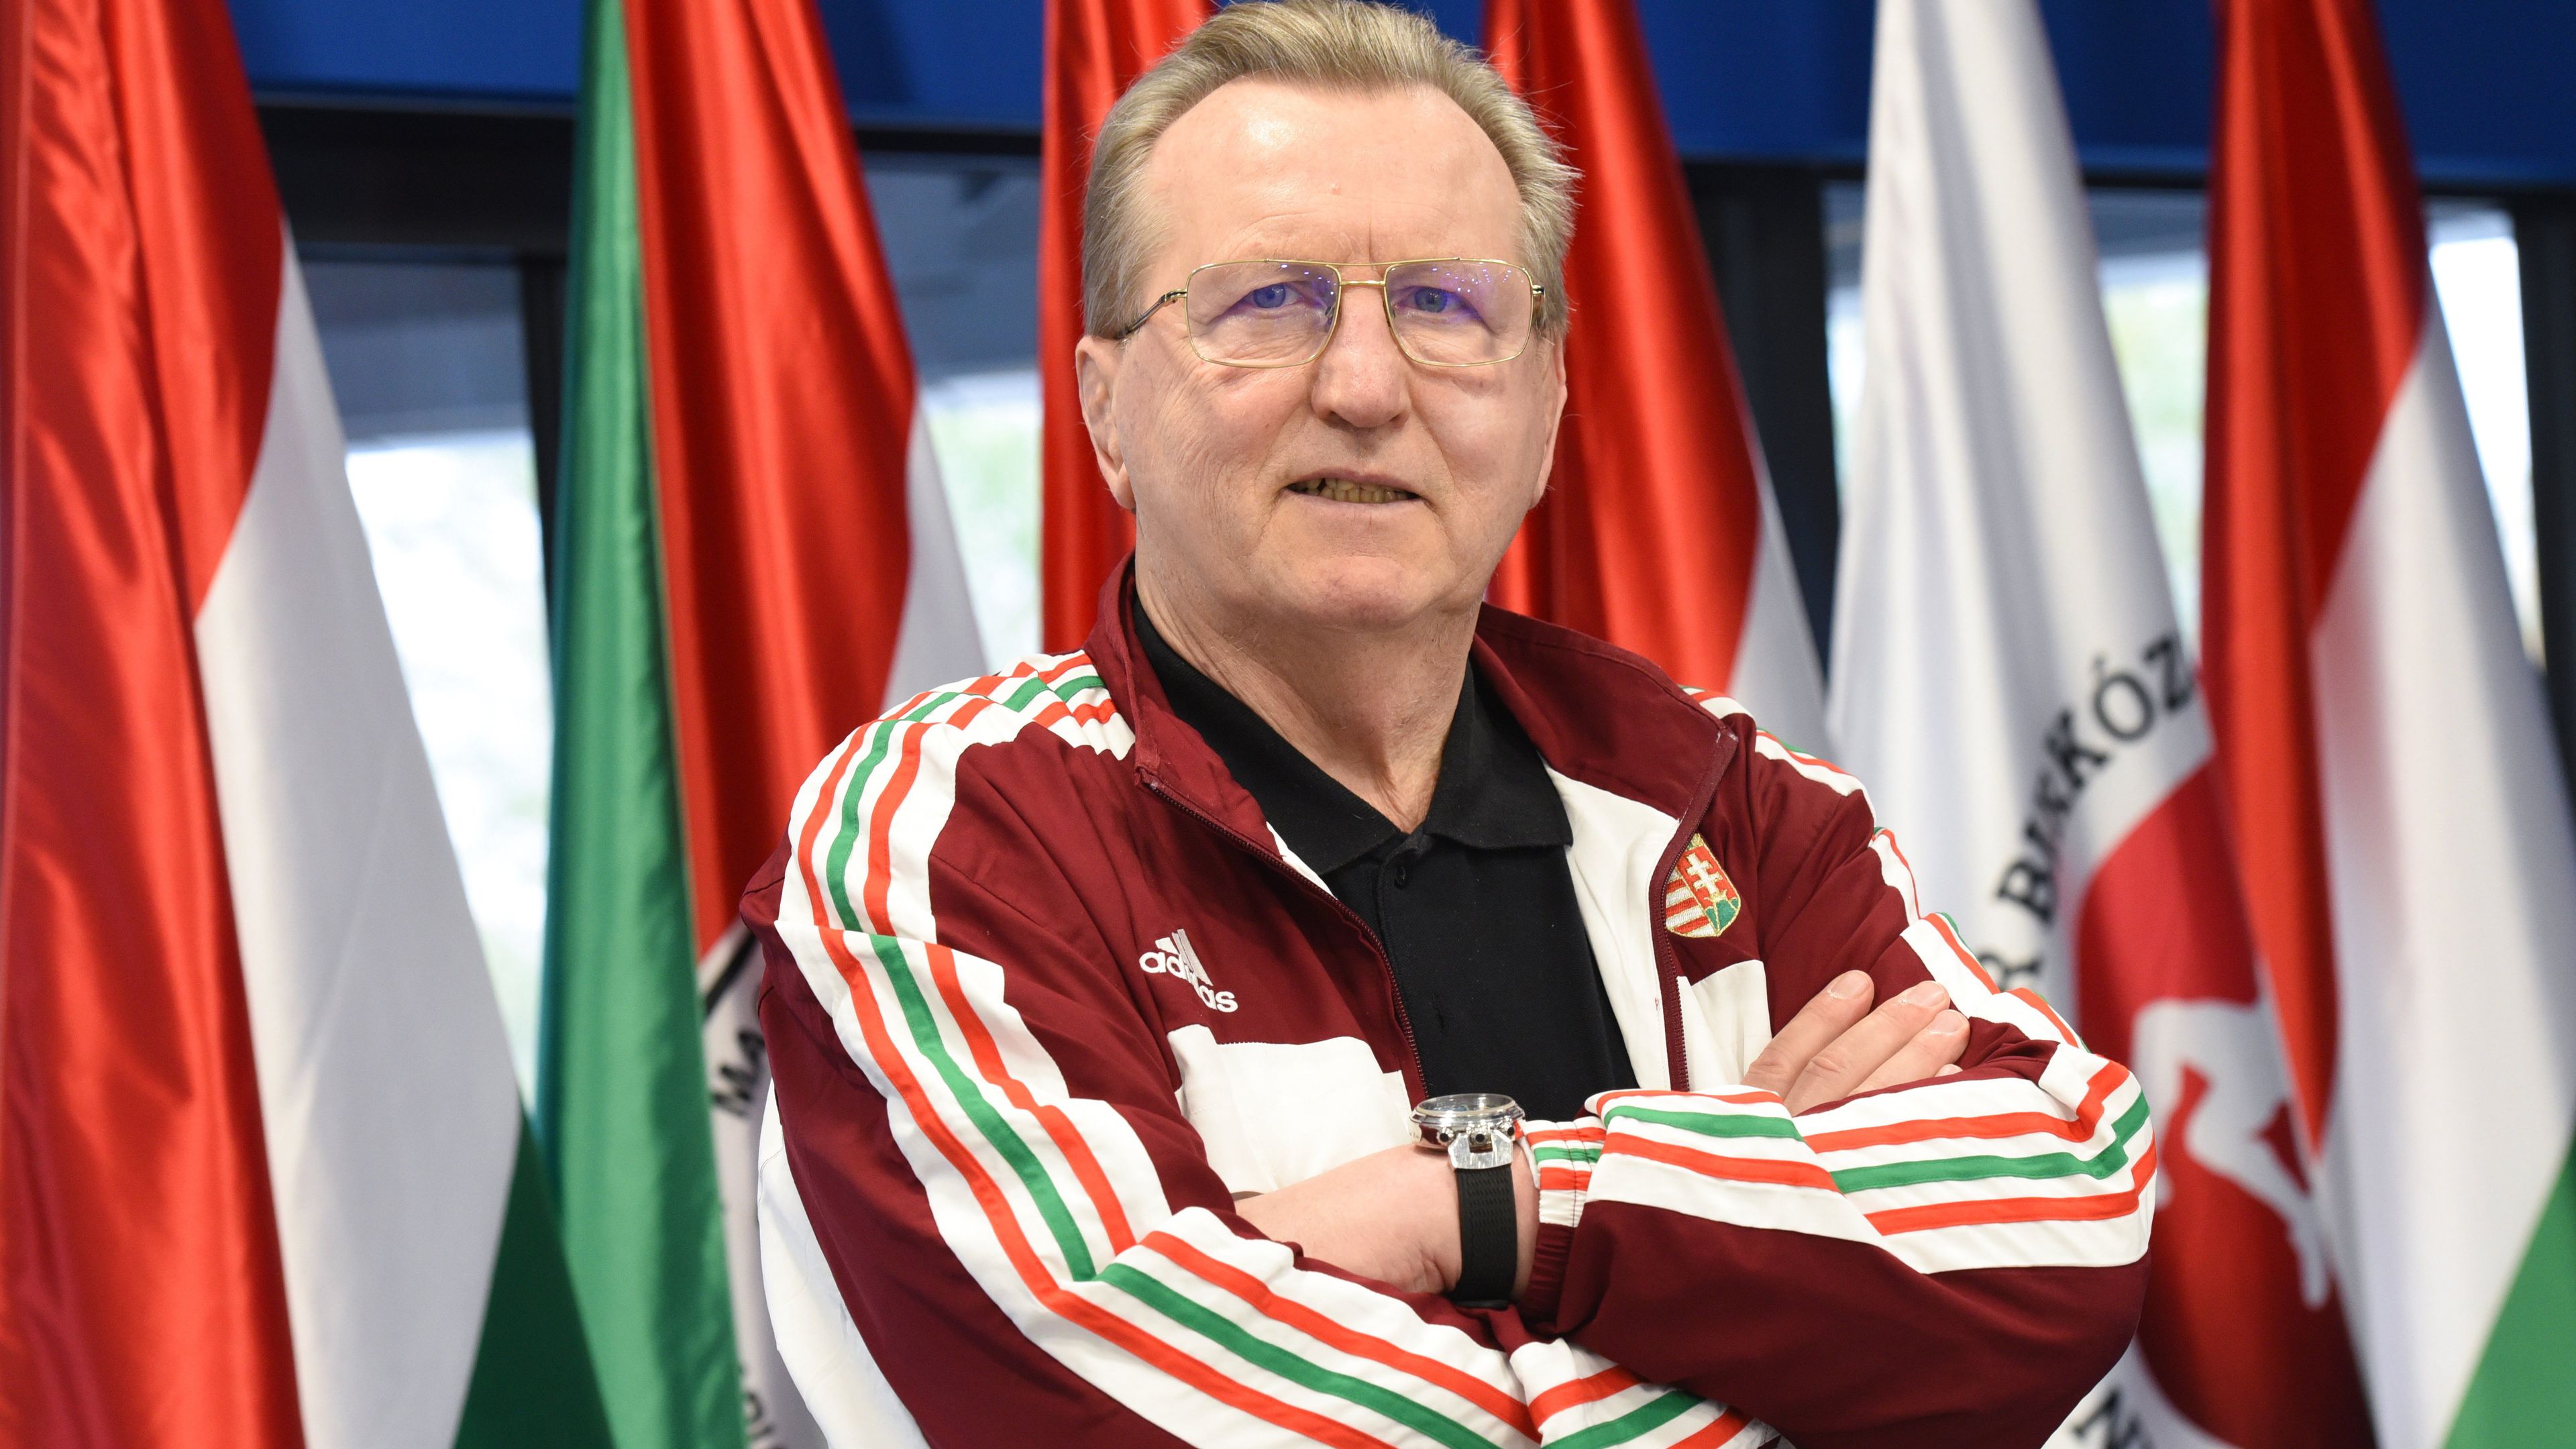 A magyar sport kategóriában Prima Primissima Díjra jelölt Hegedüs Csaba olimpiai bajnok birkózó / Fotó: MTI/Czimbal Gyula